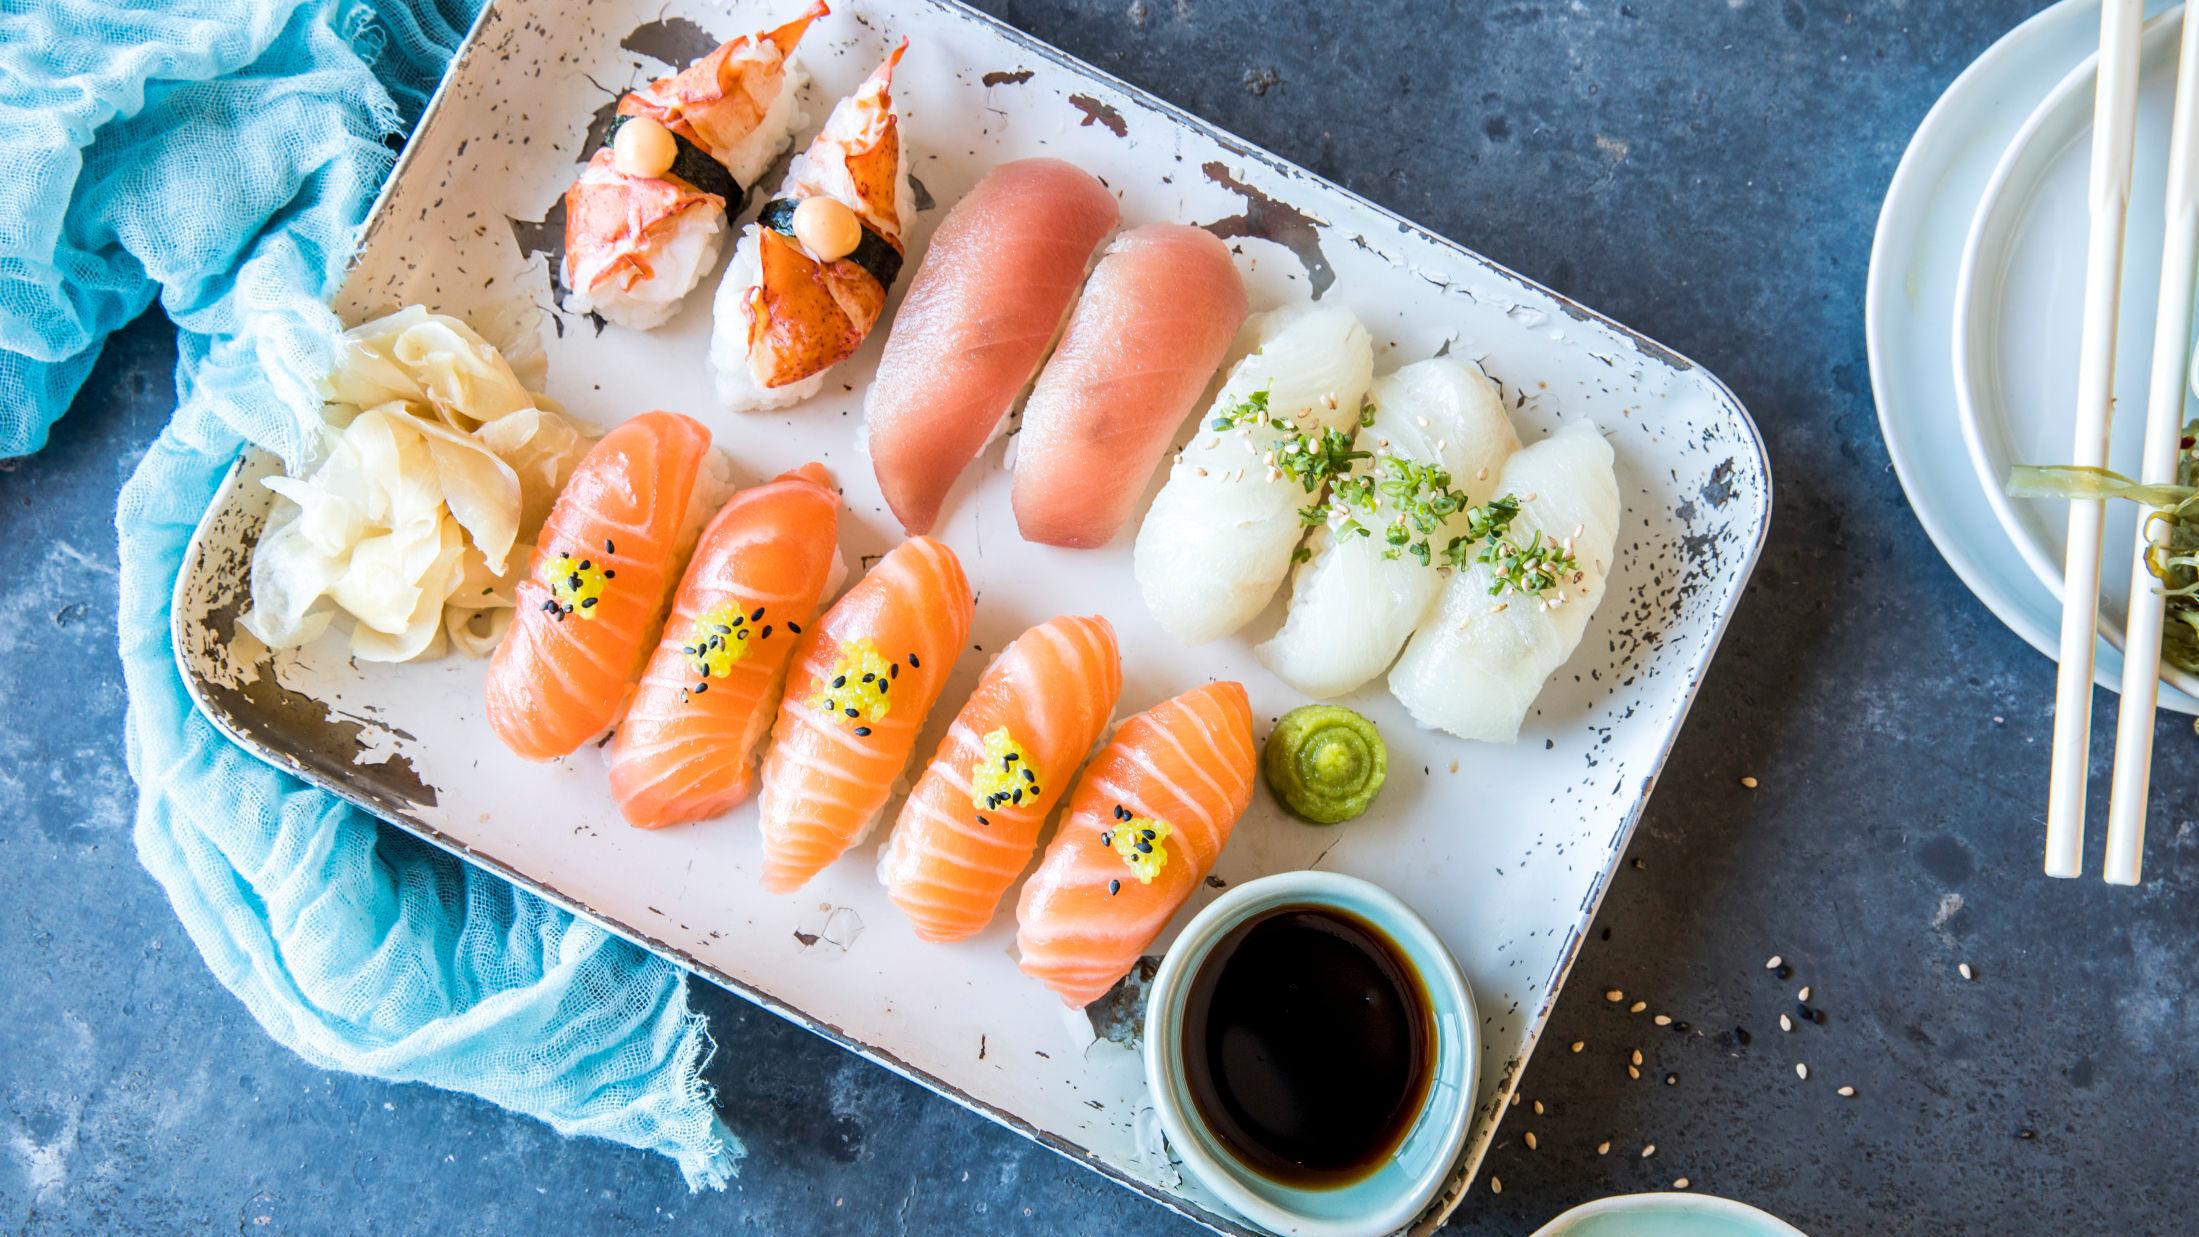 LETT OG GODT: Sushi kommer i mange varianter, være seg nigiri, maki eller futomaki. Men felles for dem alle er at det smaker kjempegodt. Foto: Sara Johannessen/VG